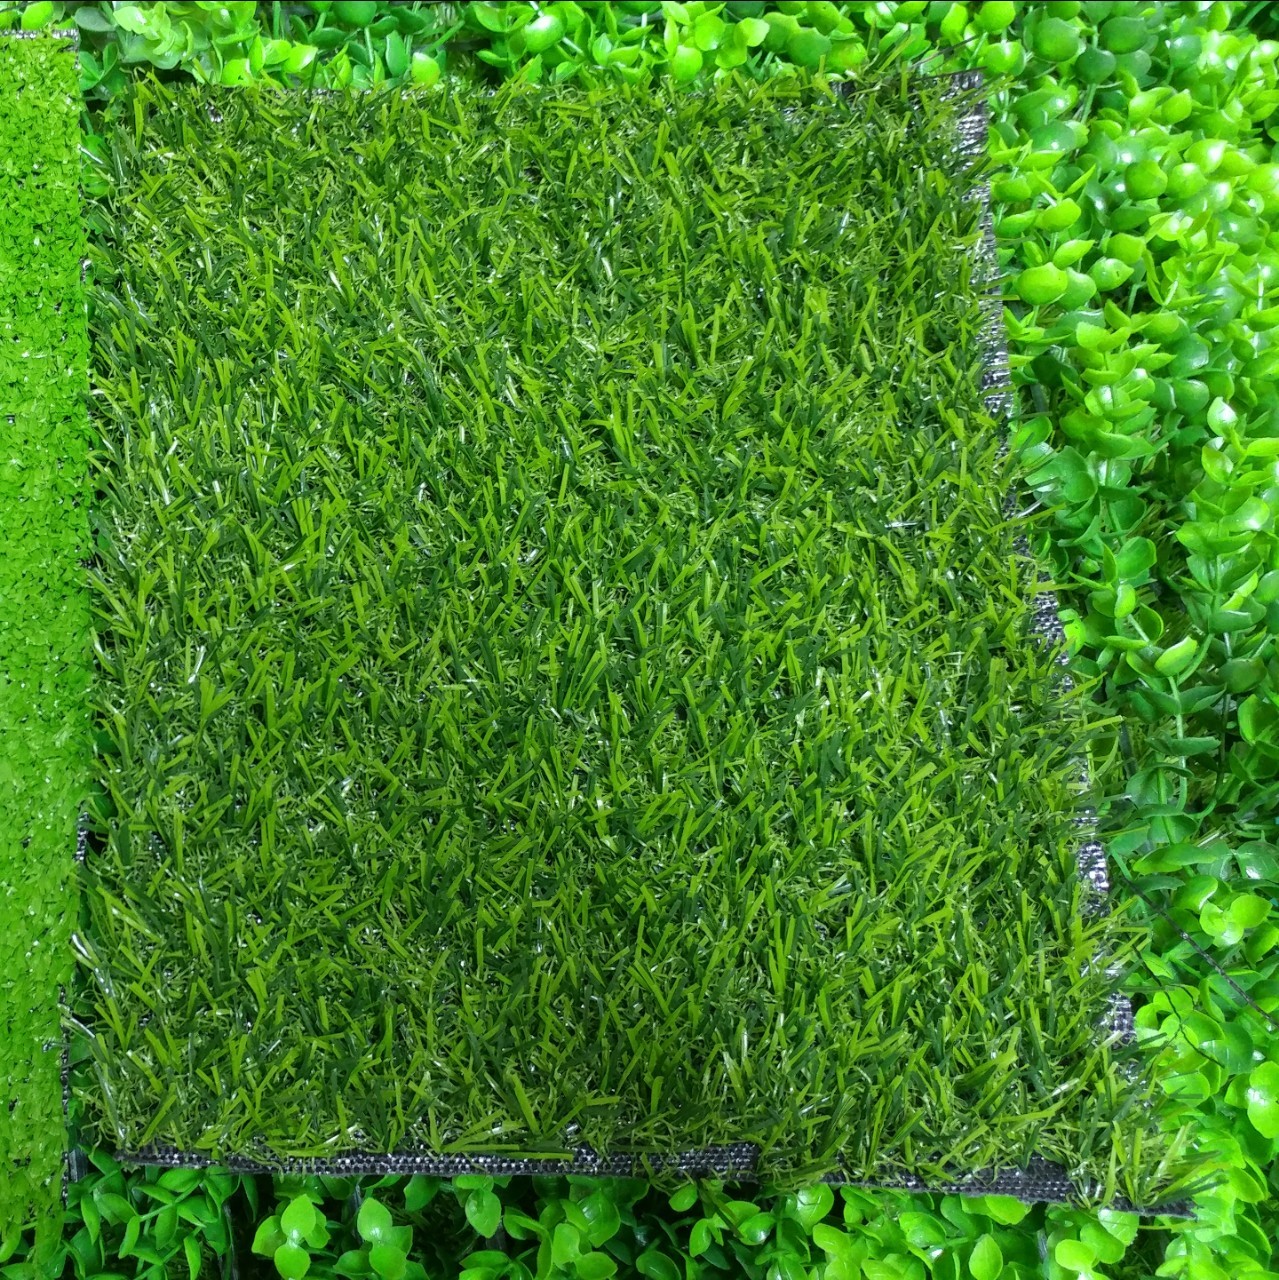 [Kích thước 2m x 0.5m] Thảm cỏ nhân tạo - tấm cỏ nhựa trải sàn - cỏ giả cao 2cm màu xanh sẫm, xanh tươi (đế thường)